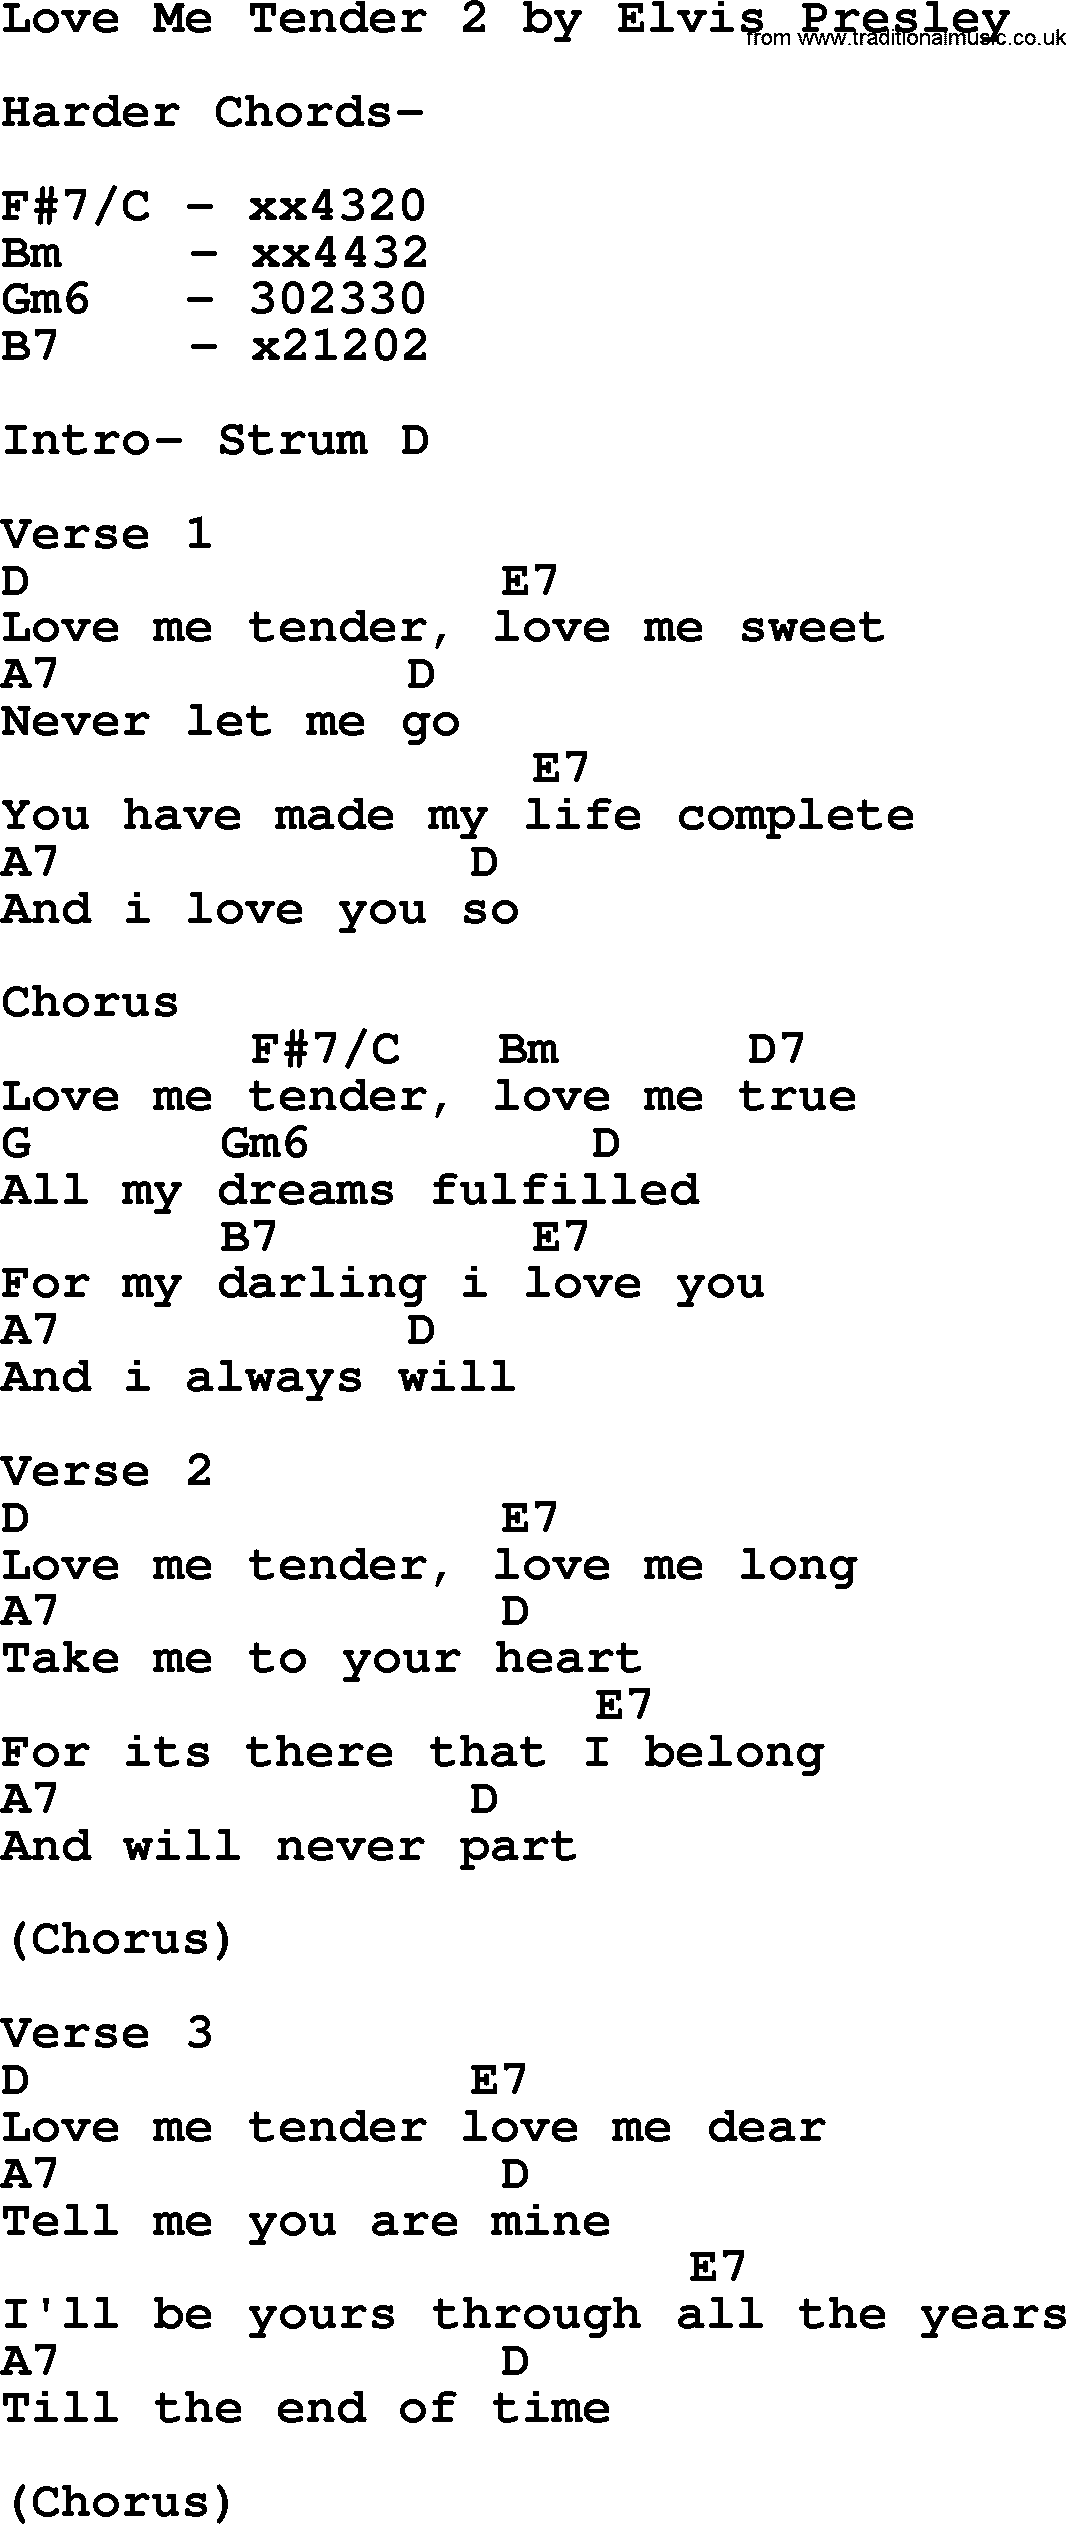 Elvis Presley song: Love Me Tender 2, lyrics and chords